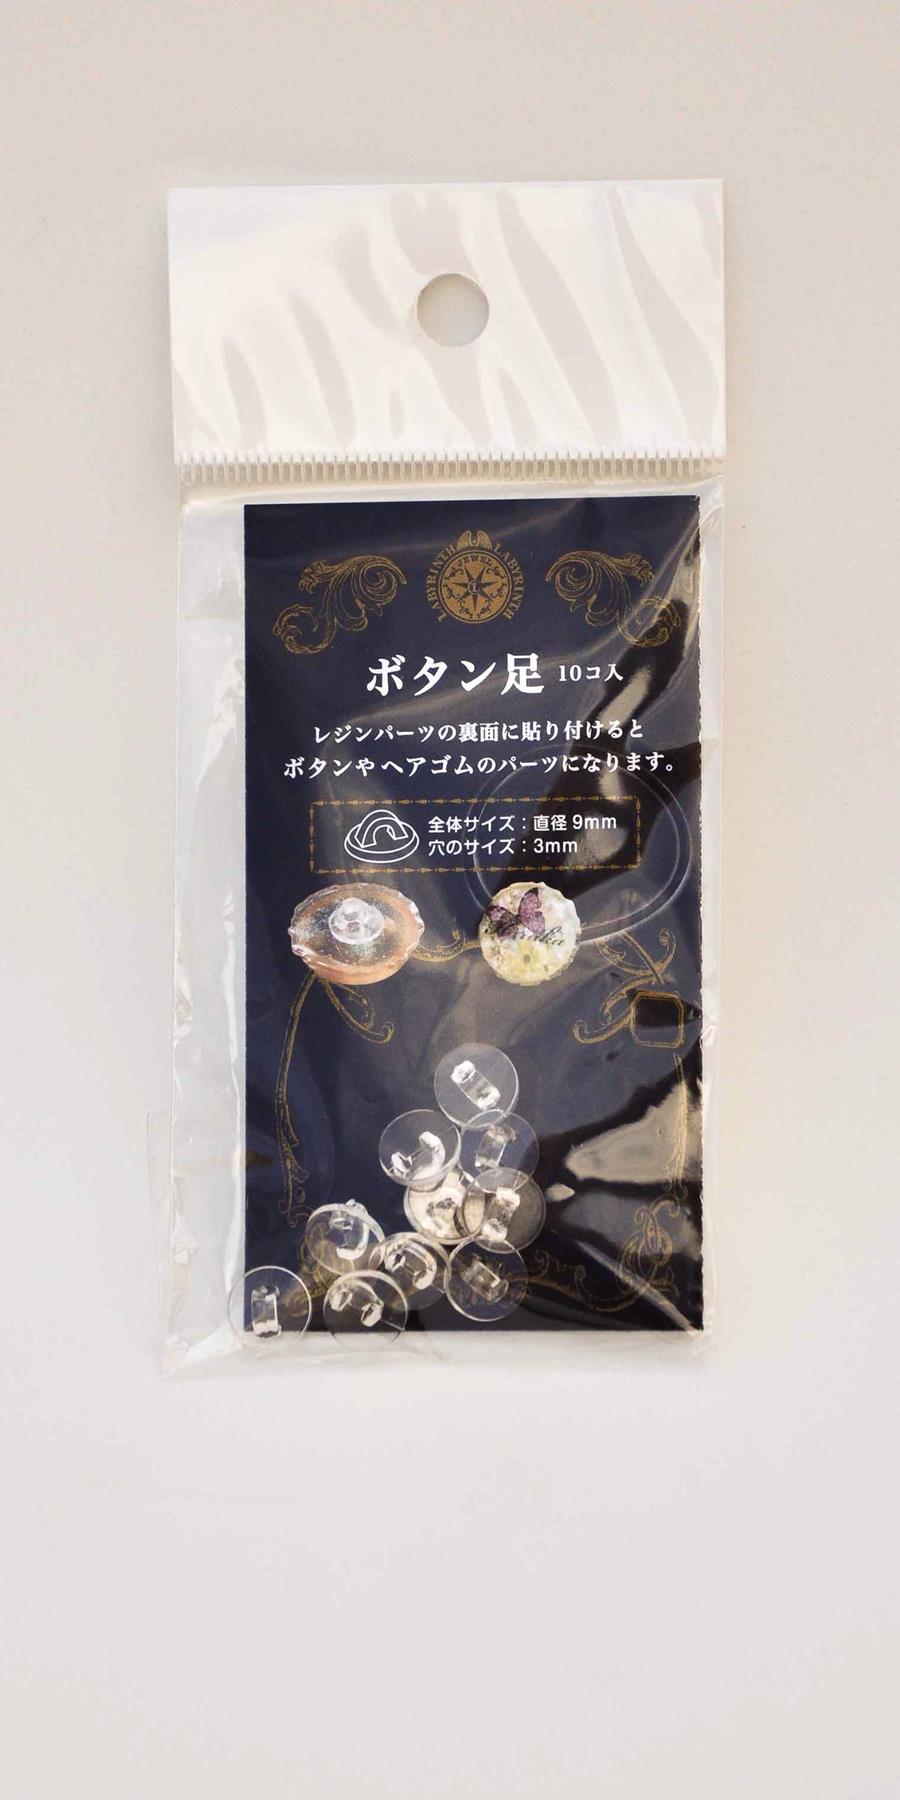 Aplicador para botones | Kirei - Manualidades Japonesas - Modelado de flores - Curso manualidades Barcelona